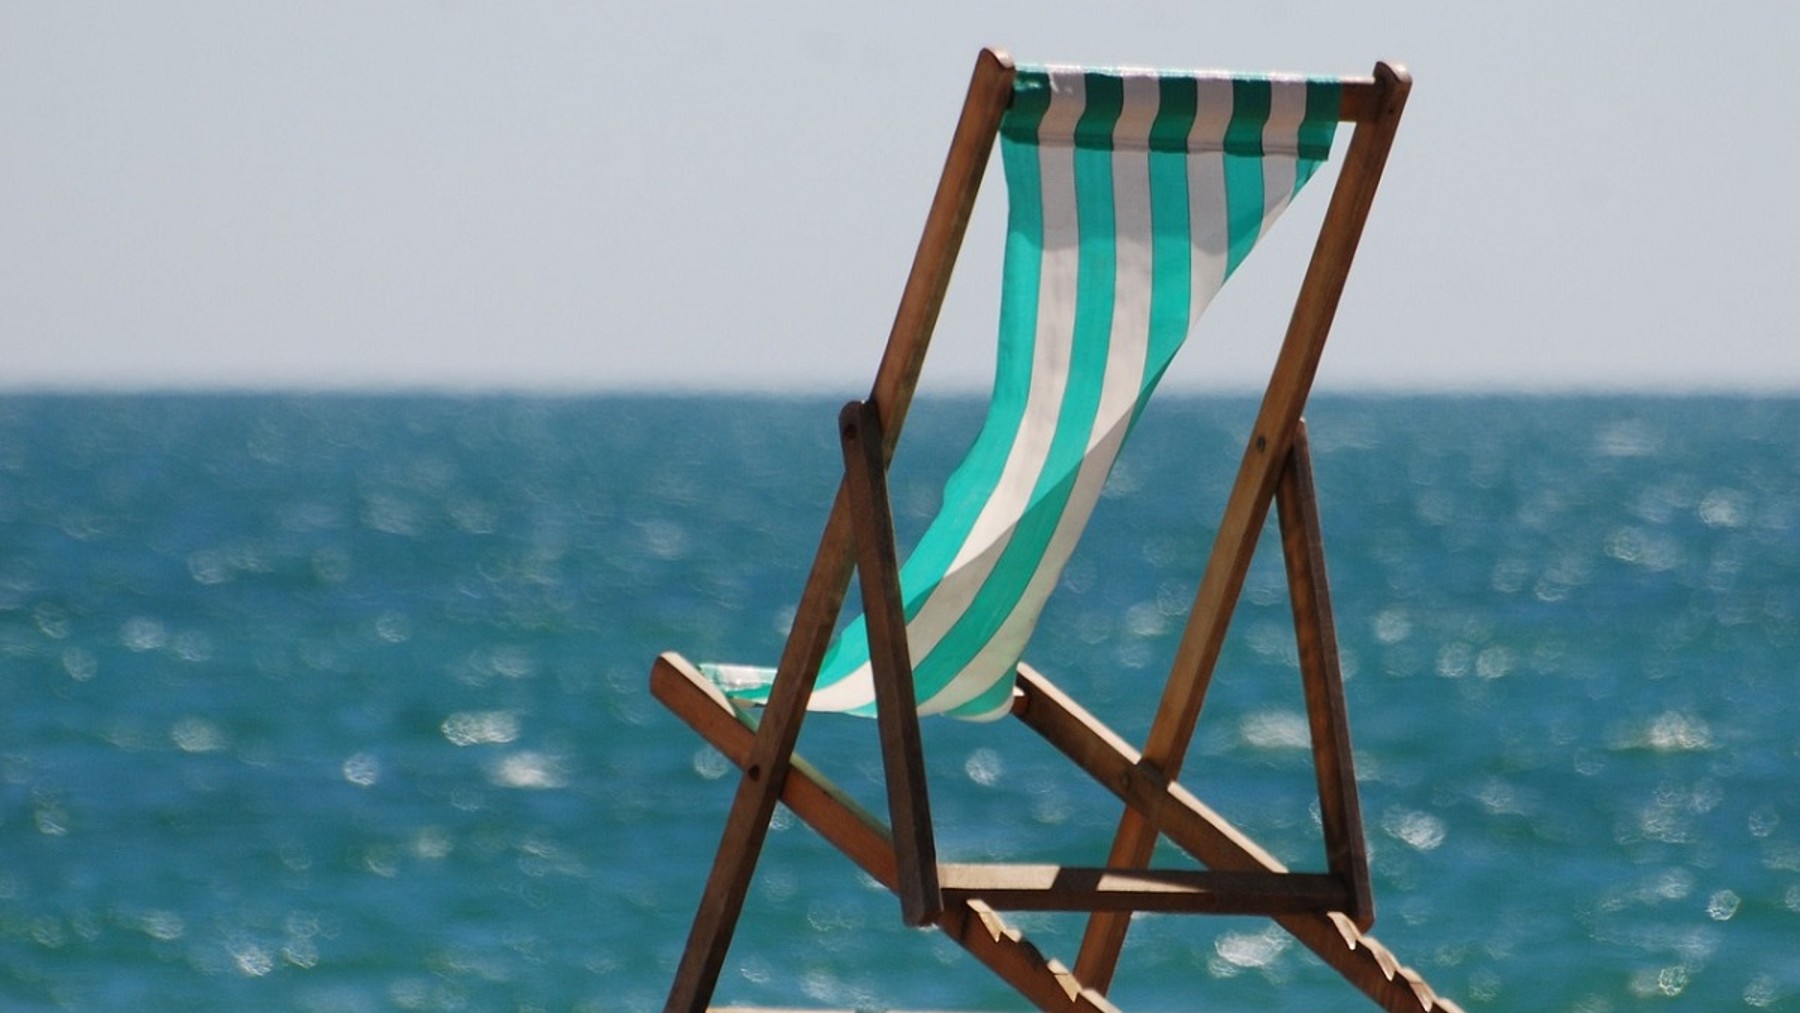 Tumbonas y sillas de playa baratas para tomar el sol con total comodidad